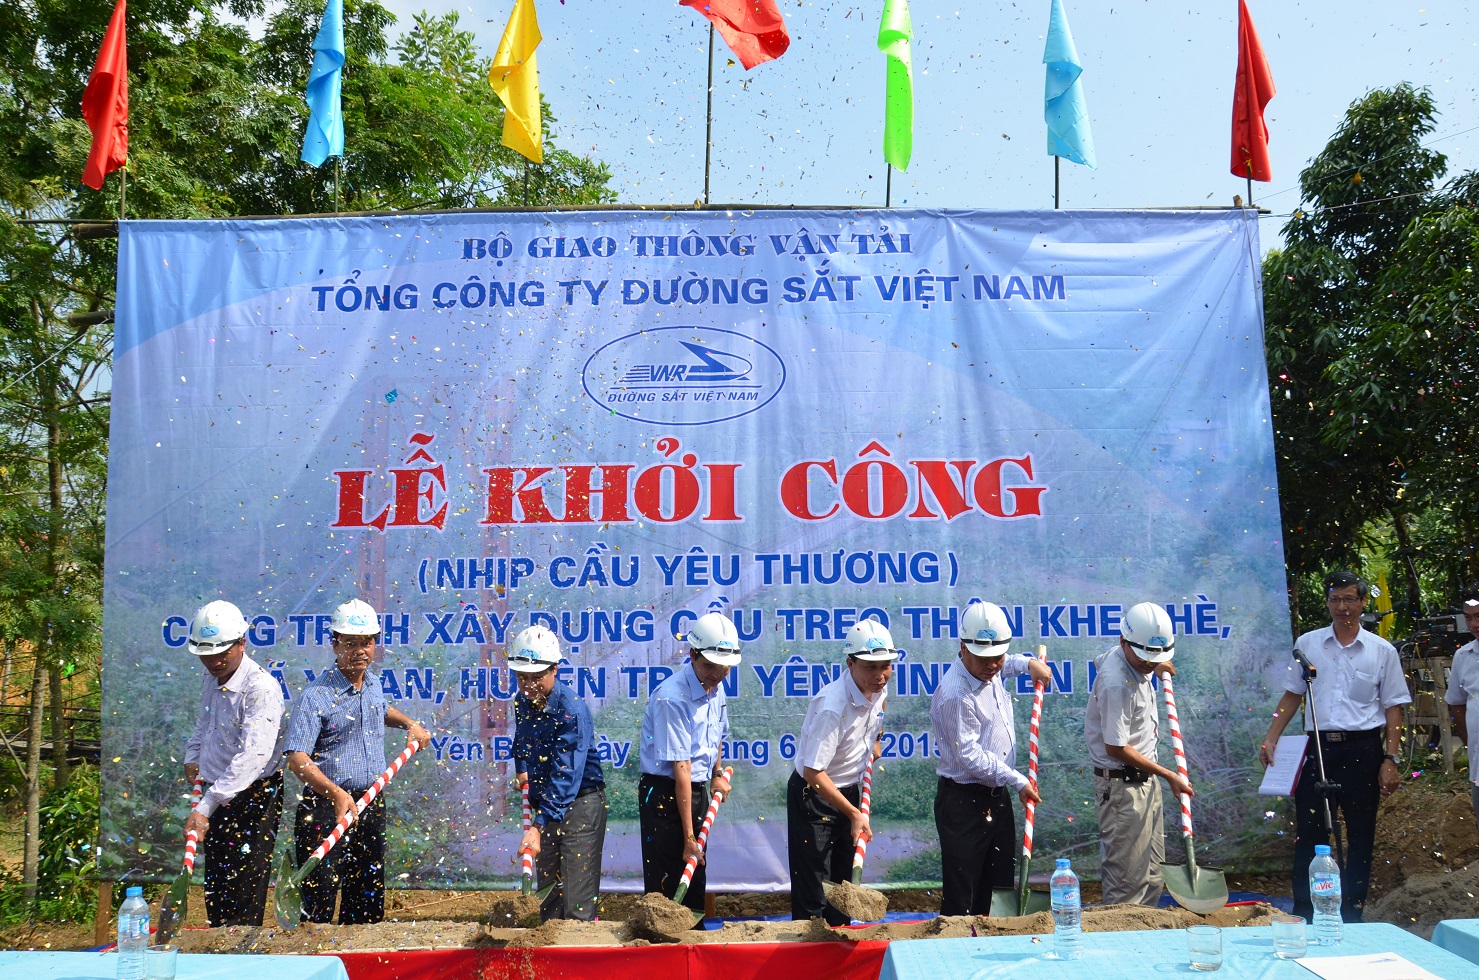 Tổng công ty ĐSVN khởi công xây dựng cầu treo tại thôn Khe Chè, huyện Trấn Yên, tỉnh Yên Bái